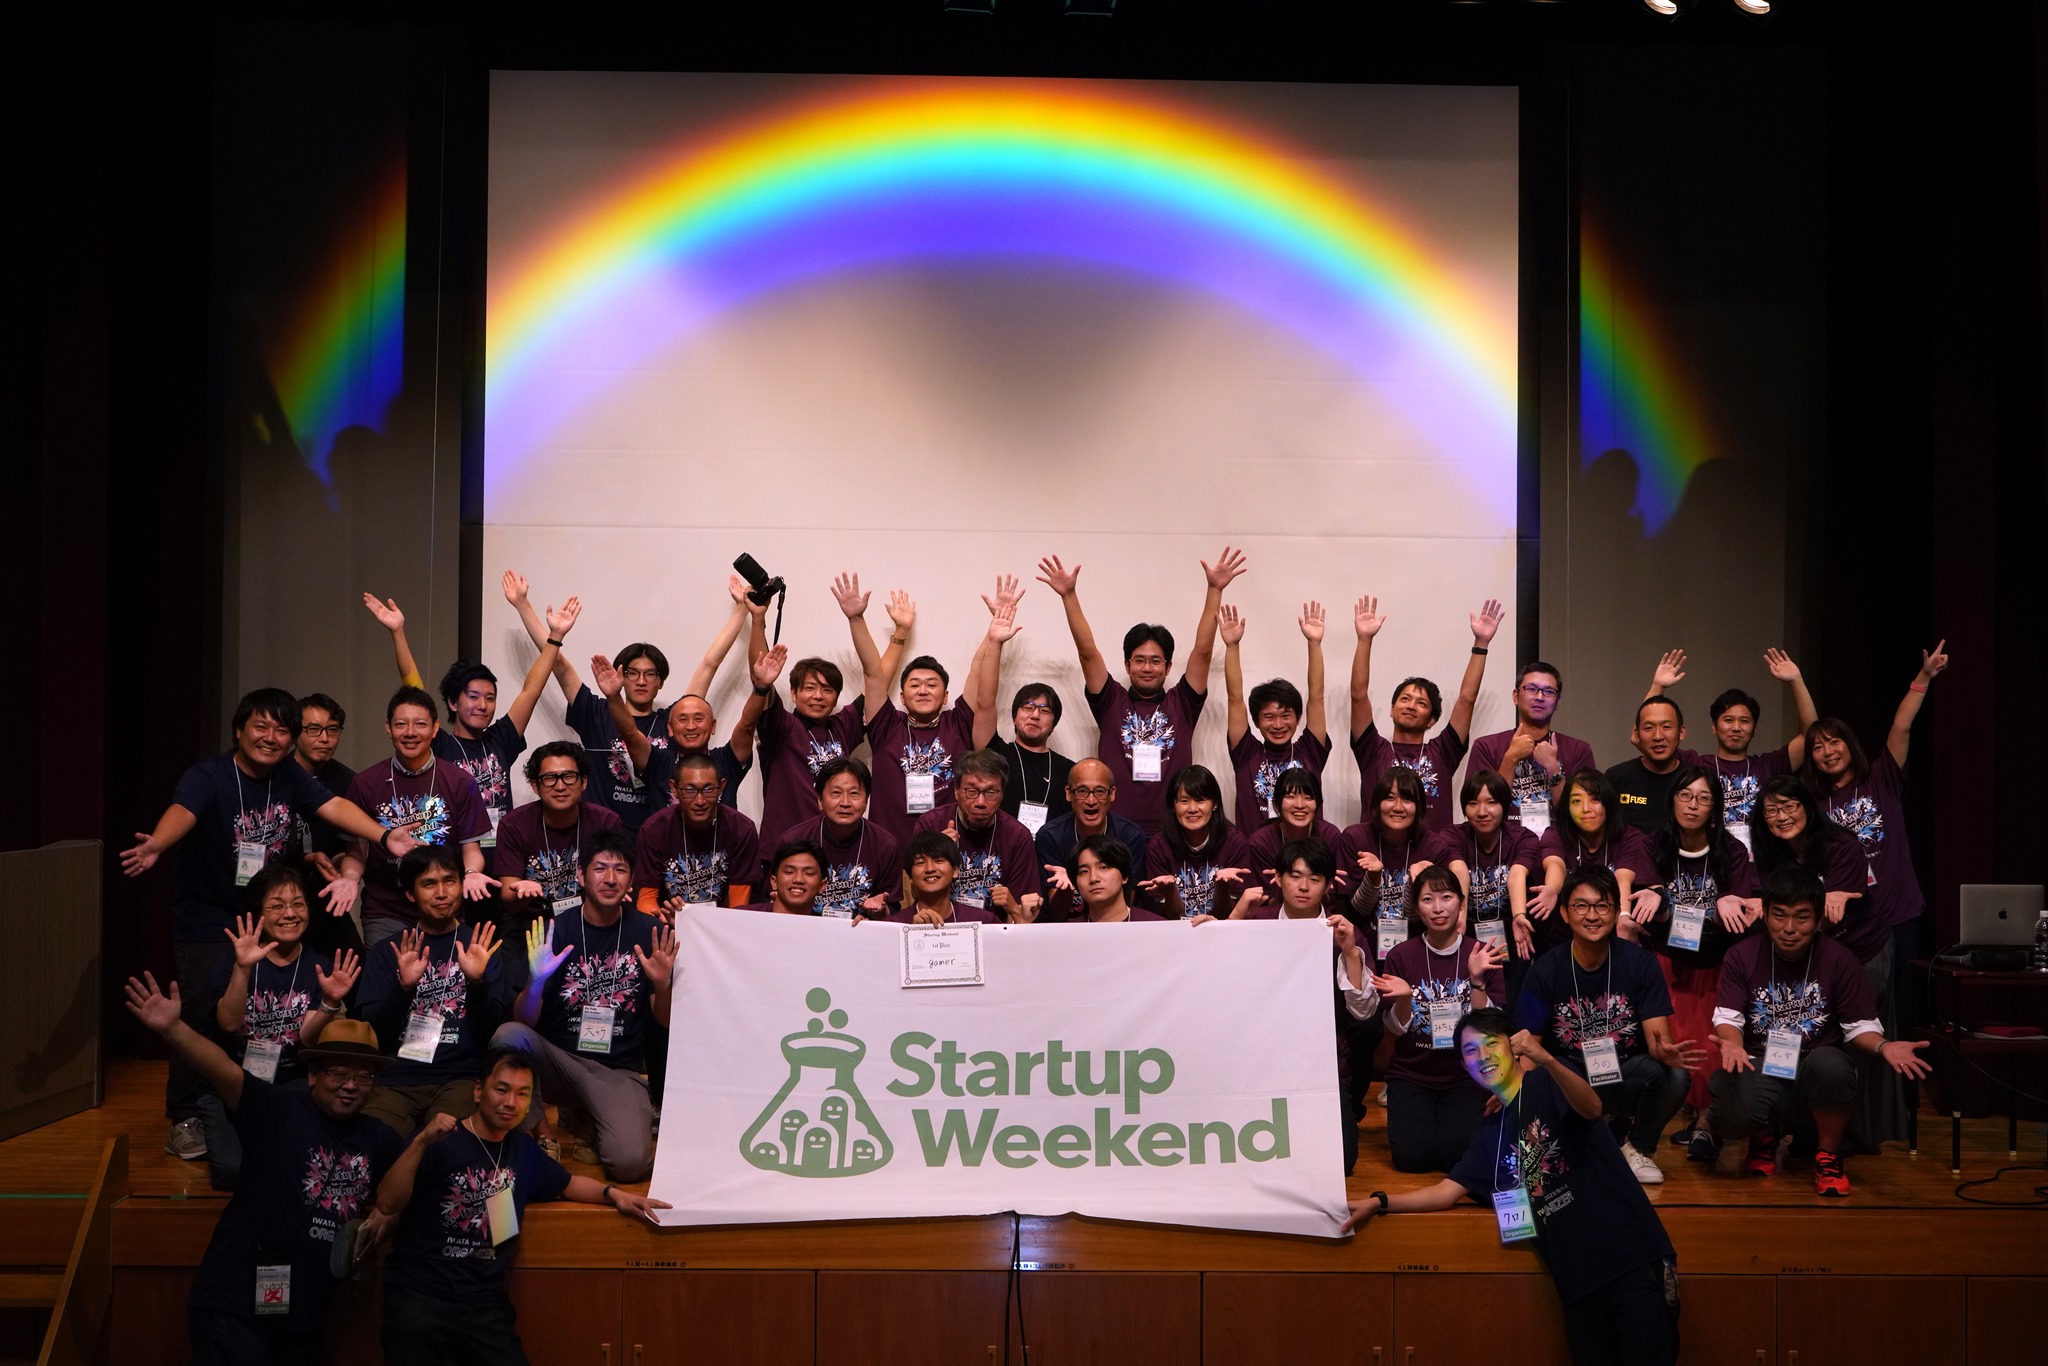 起業体験イベント「Startup Weekend 磐田」で審査員を務めました